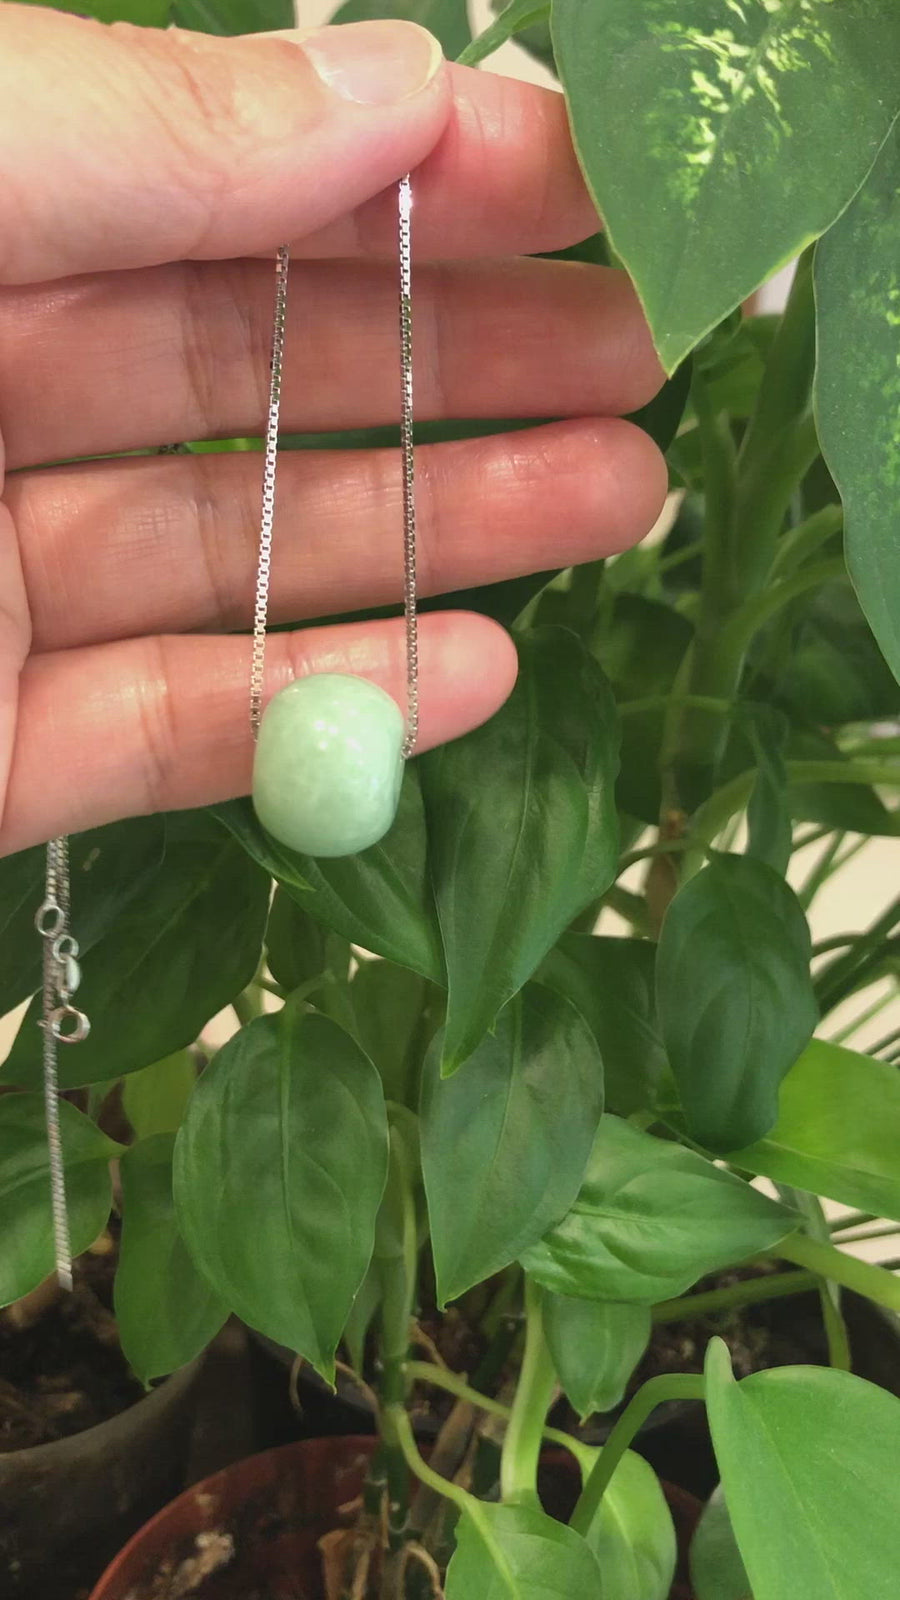 Baikalla™ "Good Luck Button" Necklace Real Vibrant Green Jade Lucky TongTong Pendant Necklace